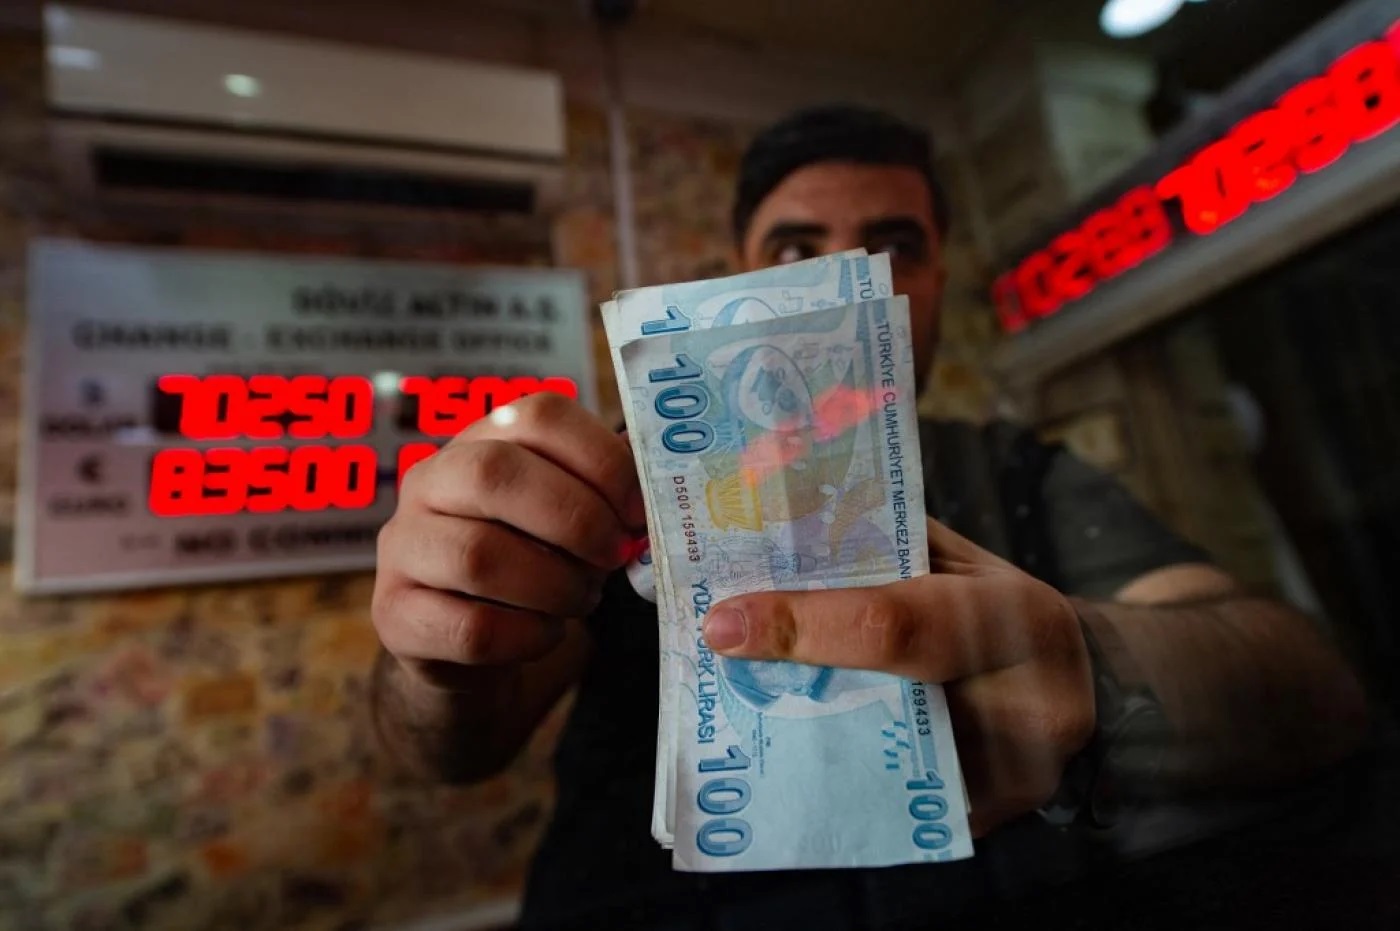 سقوط ارزش لیره ترکیه ادامه دارد؛ هر دلار آمریکا معادل ۱۴ لیر شد